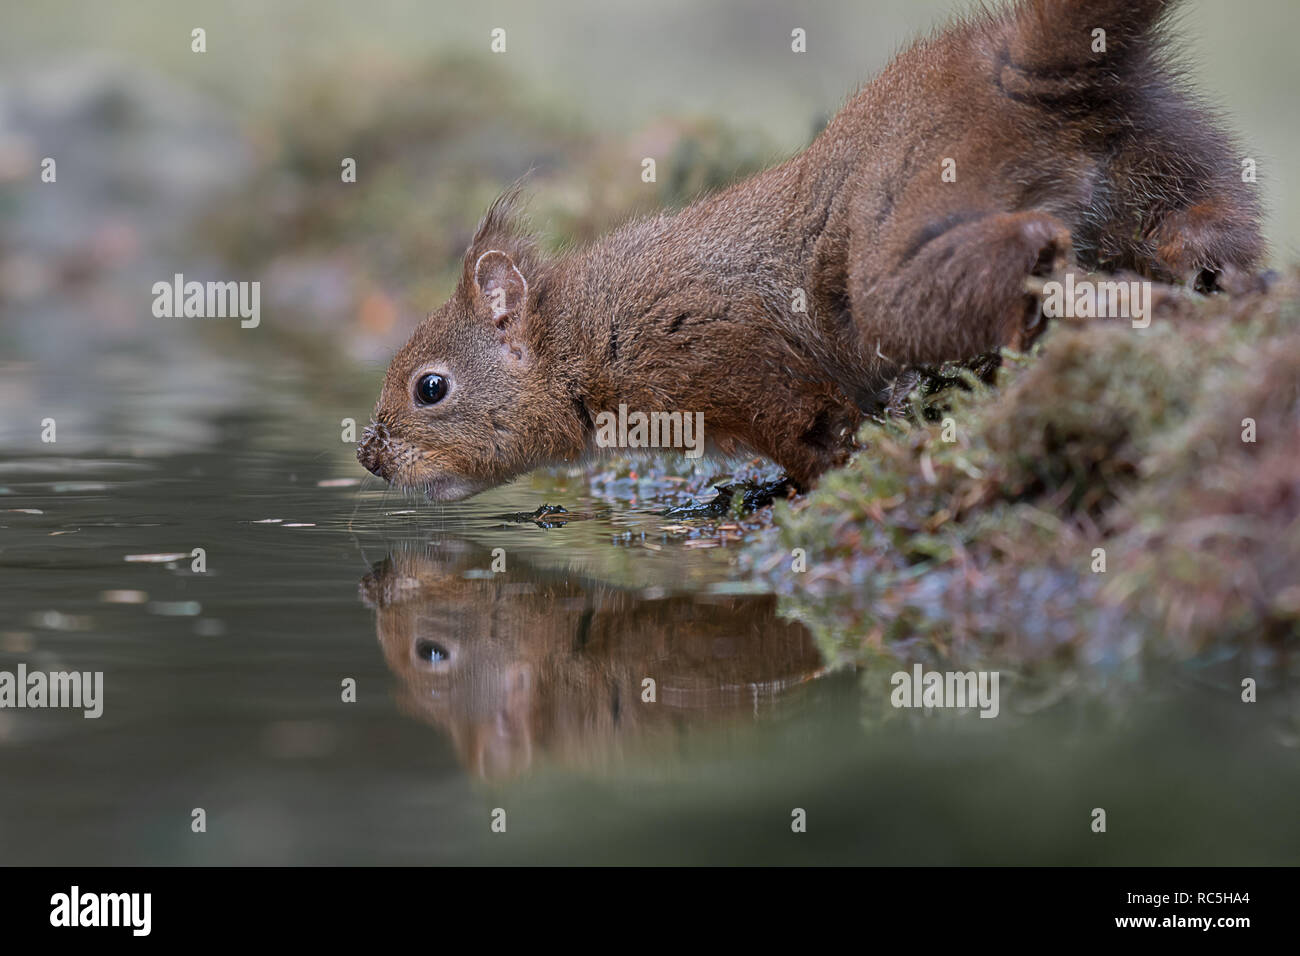 Un gros plan d'un écureuil roux par le bord de l'eau en prenant un verre avec son reflet dans l'eau. Pris à un bas niveau. Banque D'Images